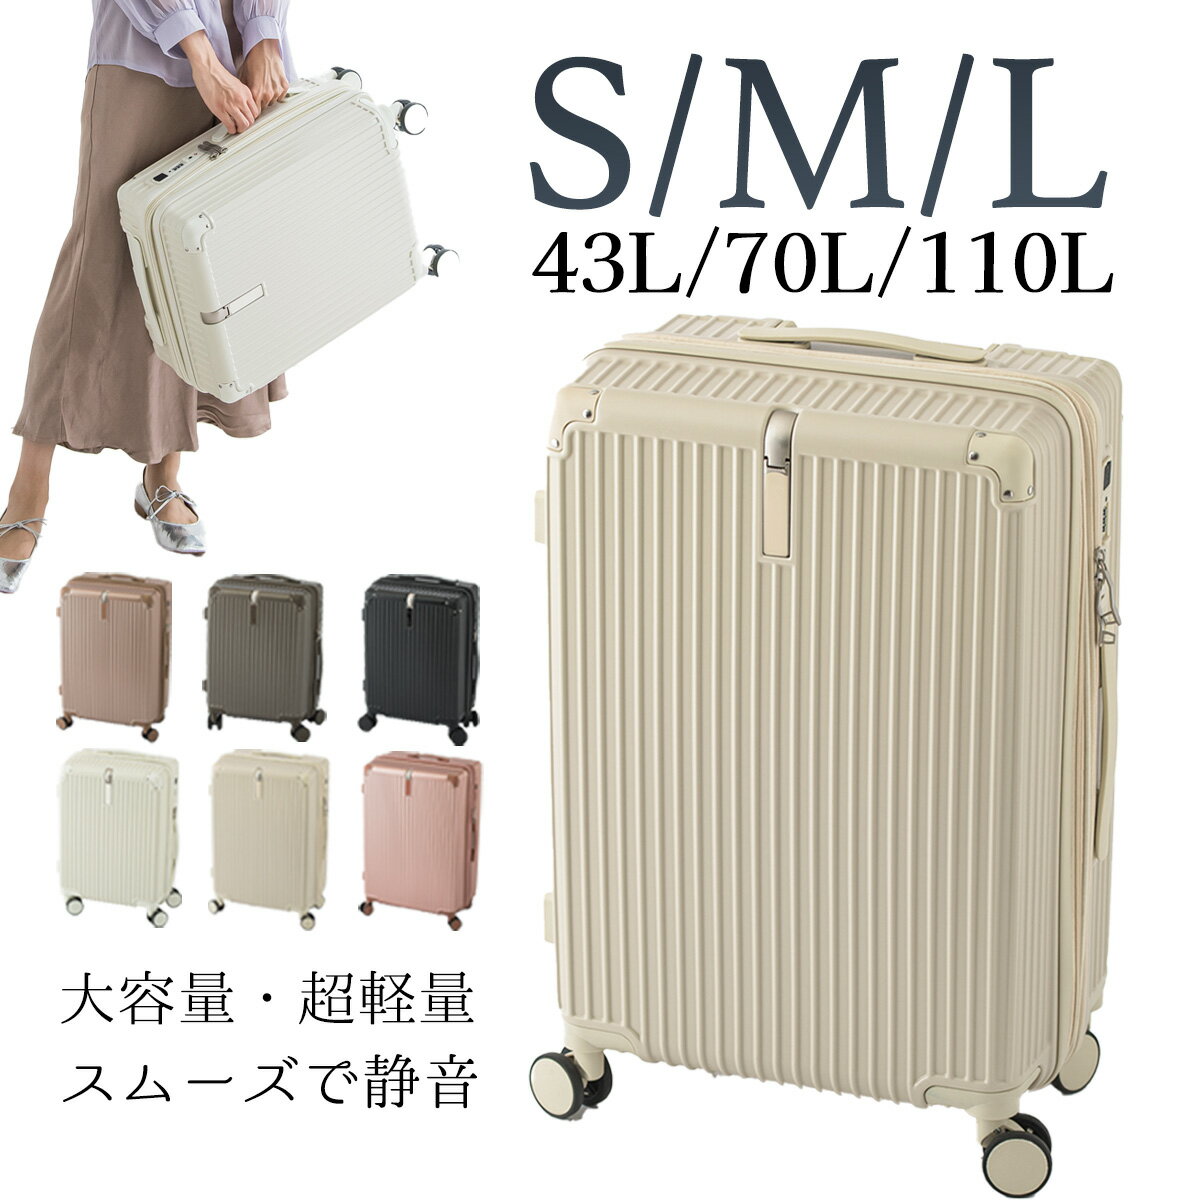 スーツケース USBポート付き キャリーケース S/M/L 43L/70L /110L機内持ち込み 3-5日用 泊まる カップホルダー付き 軽量設計 多機能スーツケース 大容量 GOTOトラベル 国内旅行 送料無料CICIBELLA